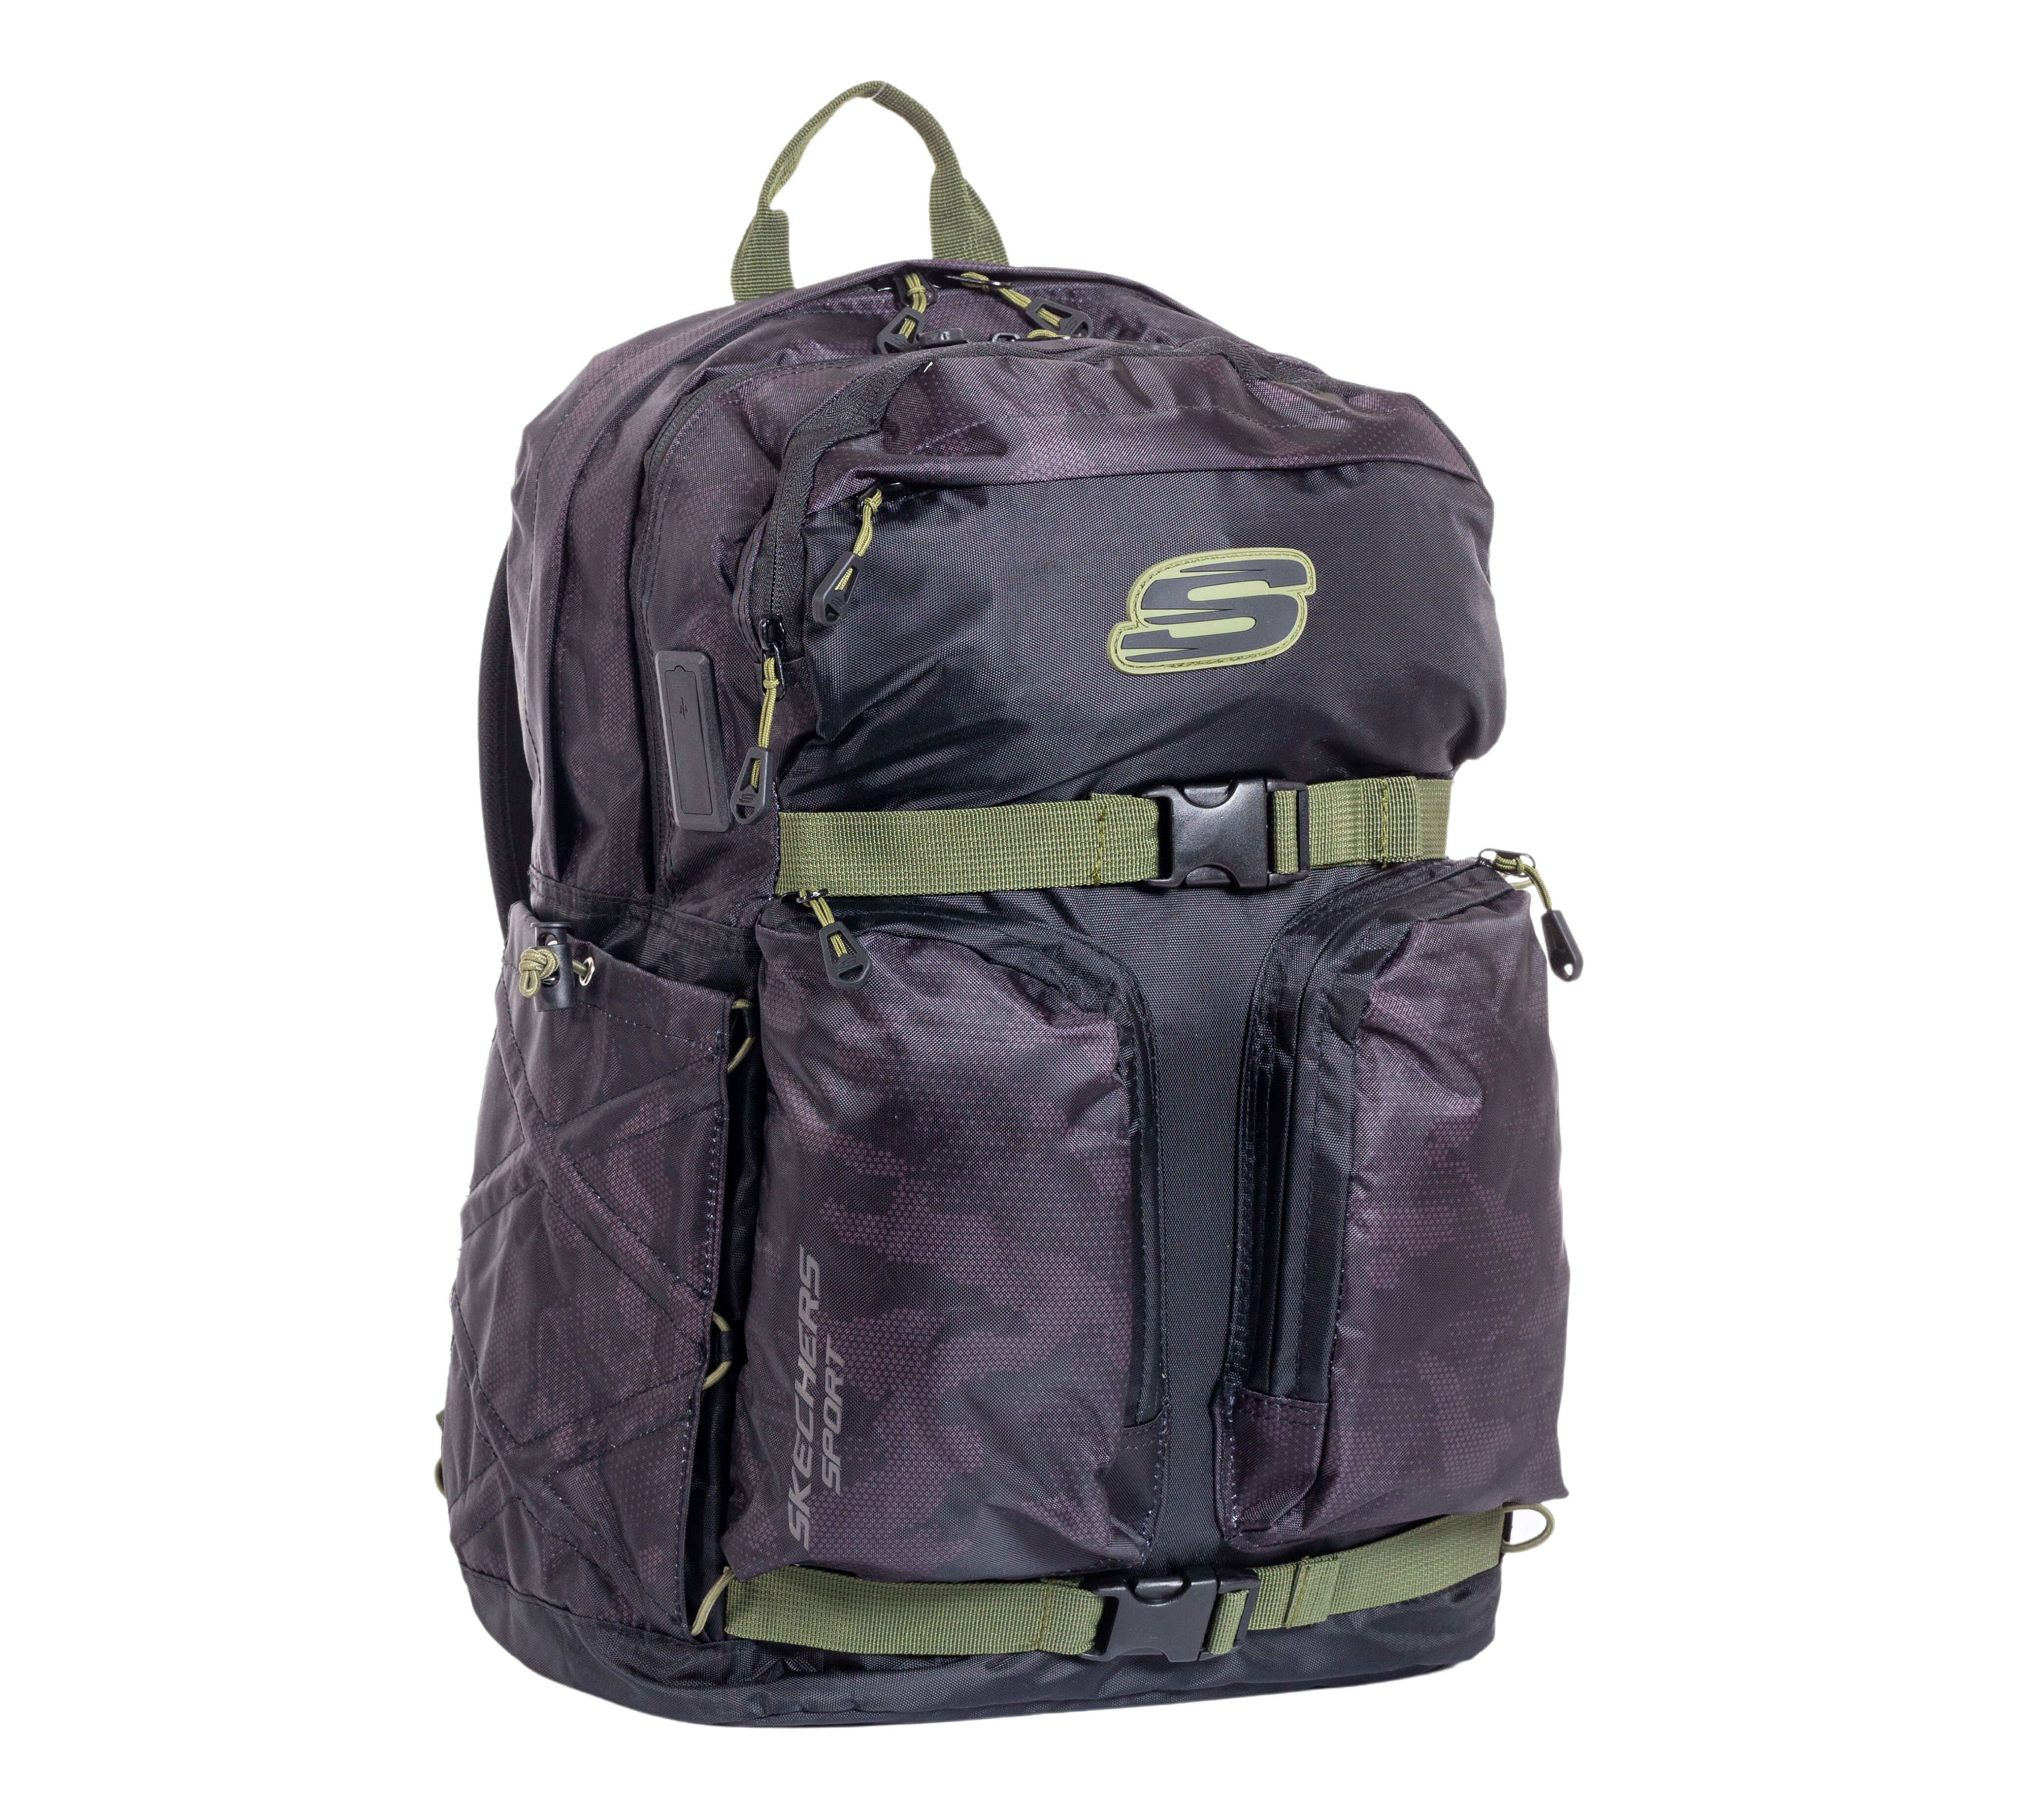 Discoverer Backpack